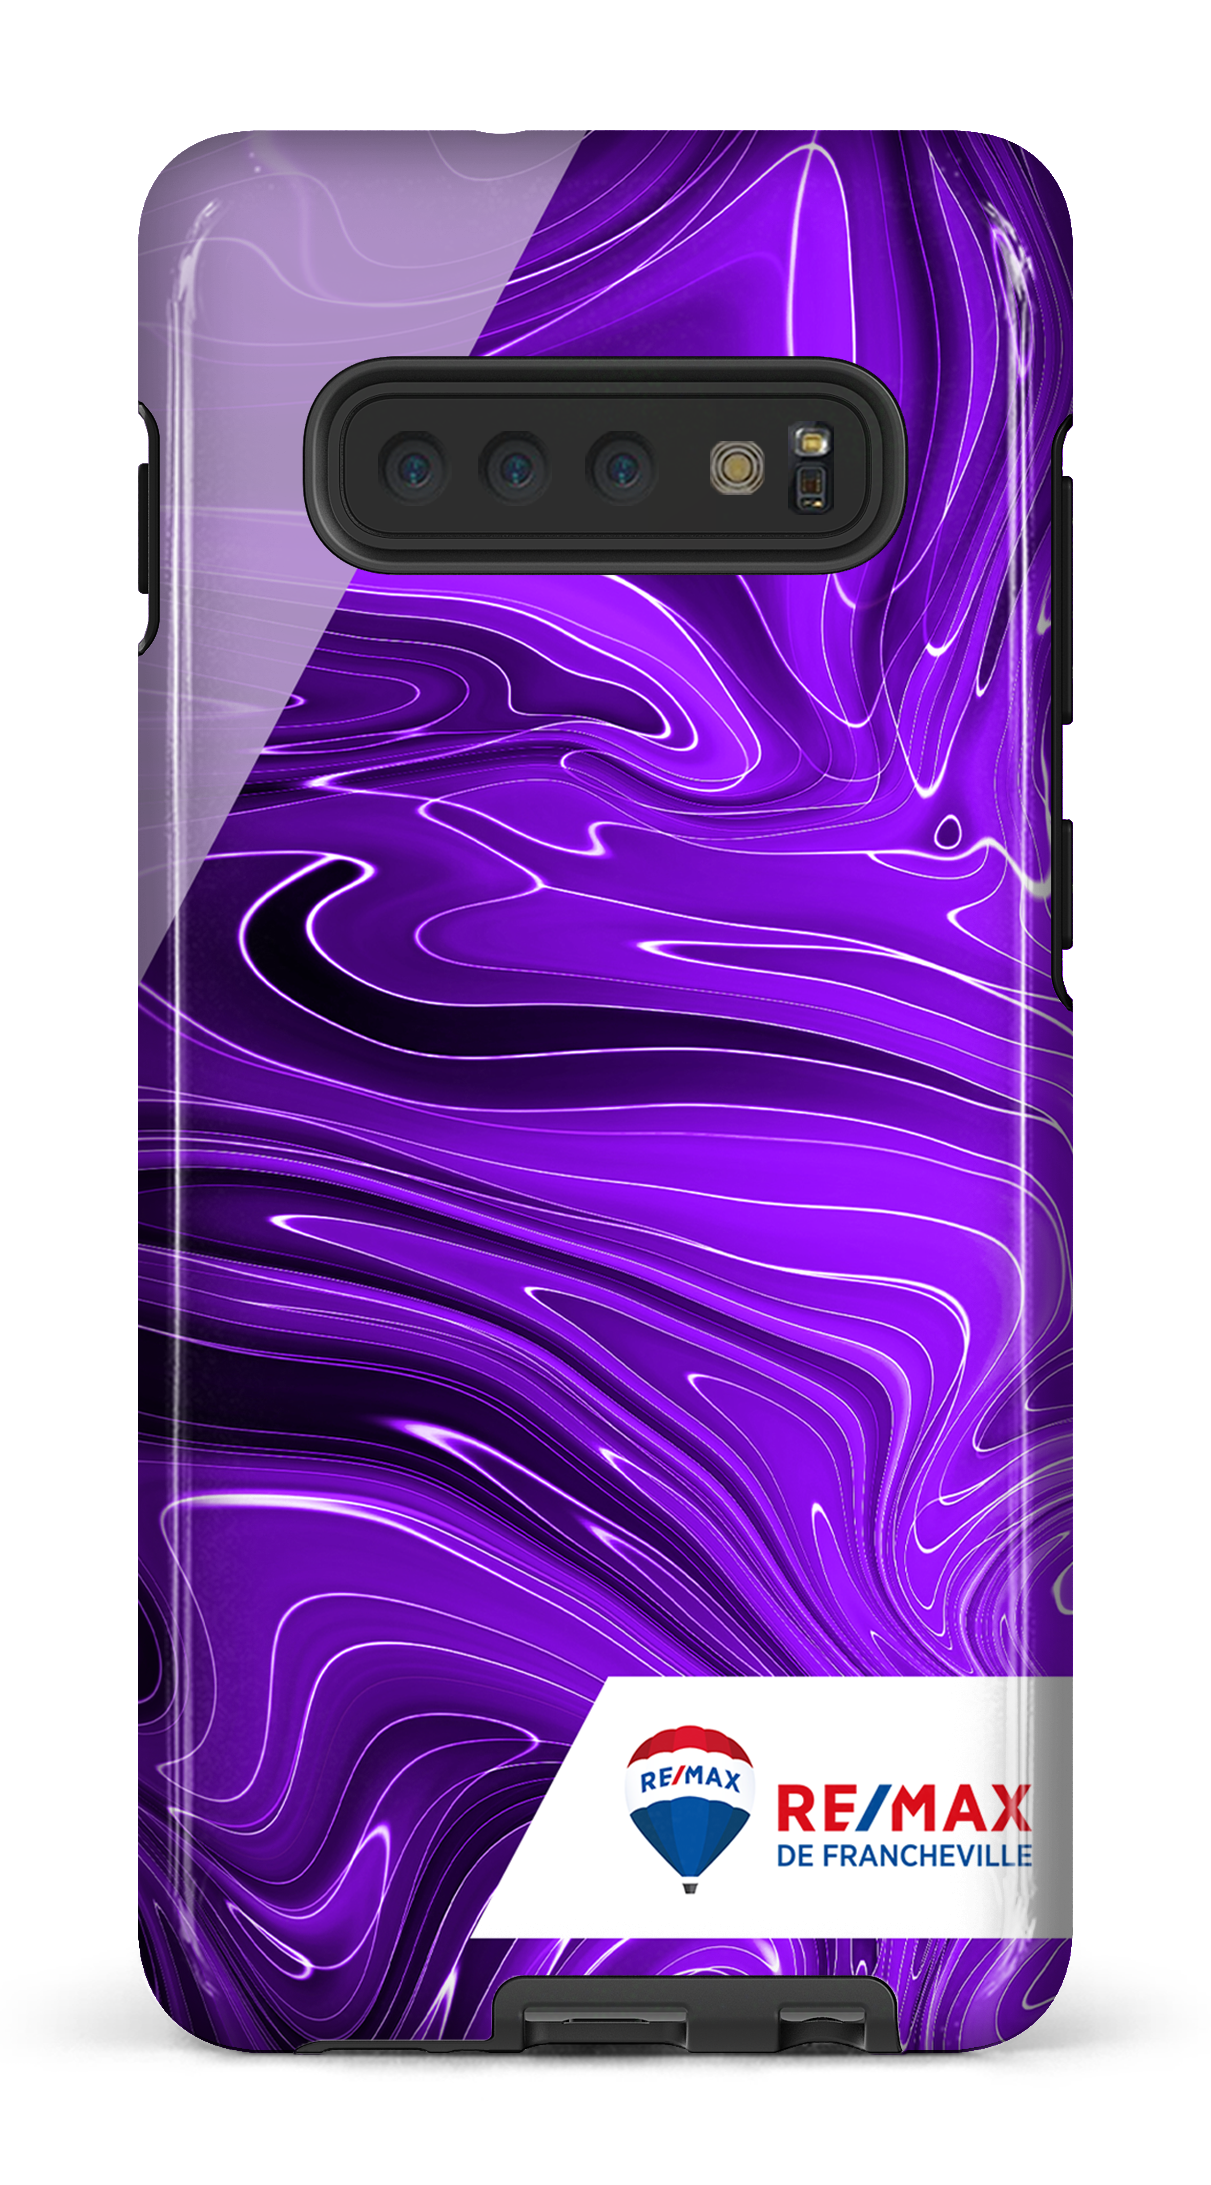 Peinture marbrée sombre violette de Francheville - Galaxy S10 Plus